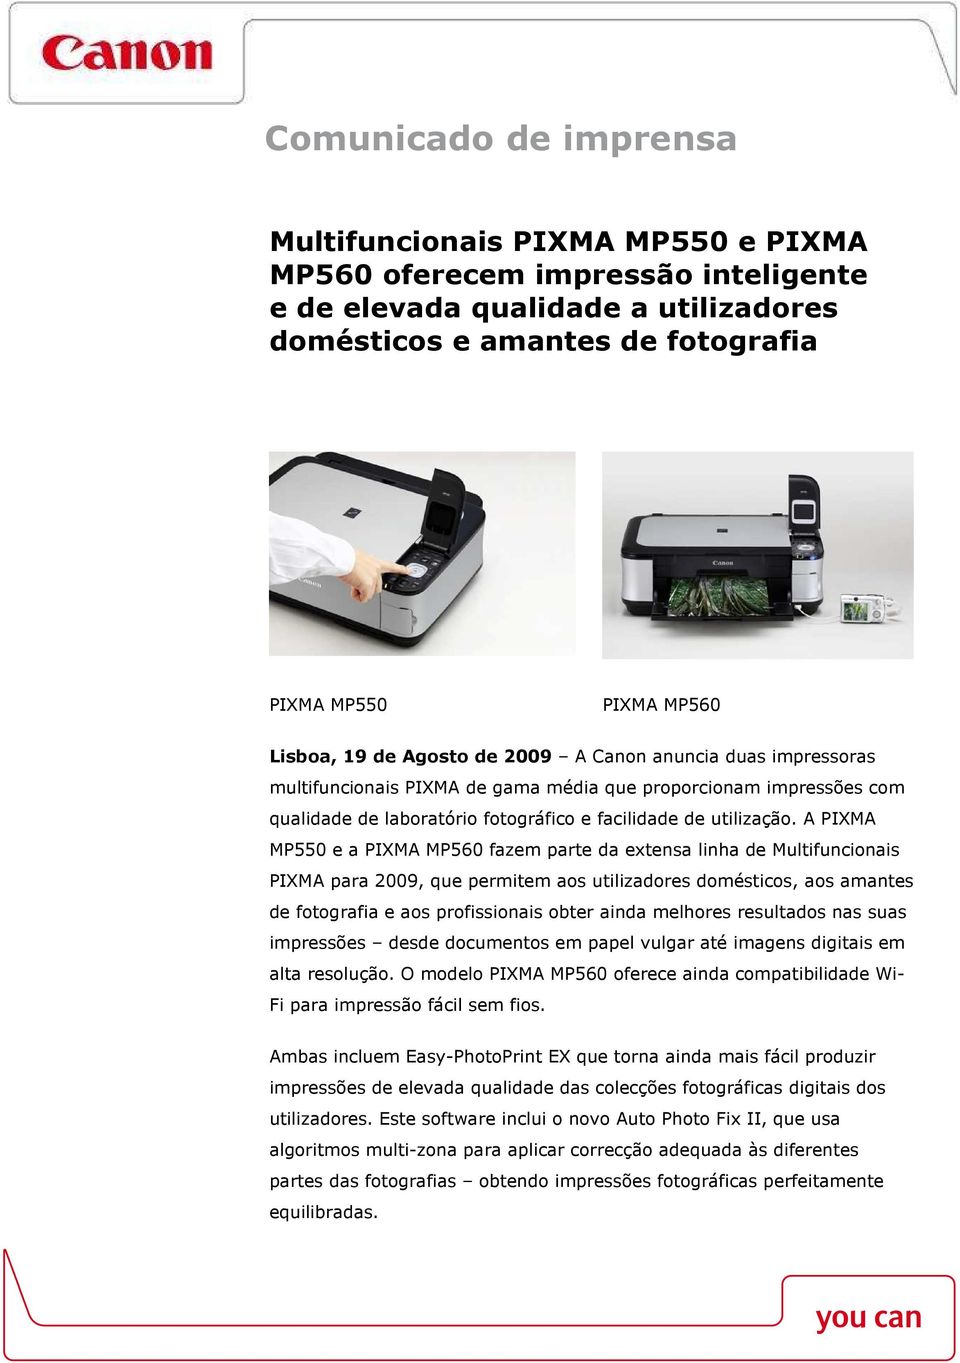 A PIXMA MP550 e a PIXMA MP560 fazem parte da extensa linha de Multifuncionais PIXMA para 2009, que permitem aos utilizadores domésticos, aos amantes de fotografia e aos profissionais obter ainda